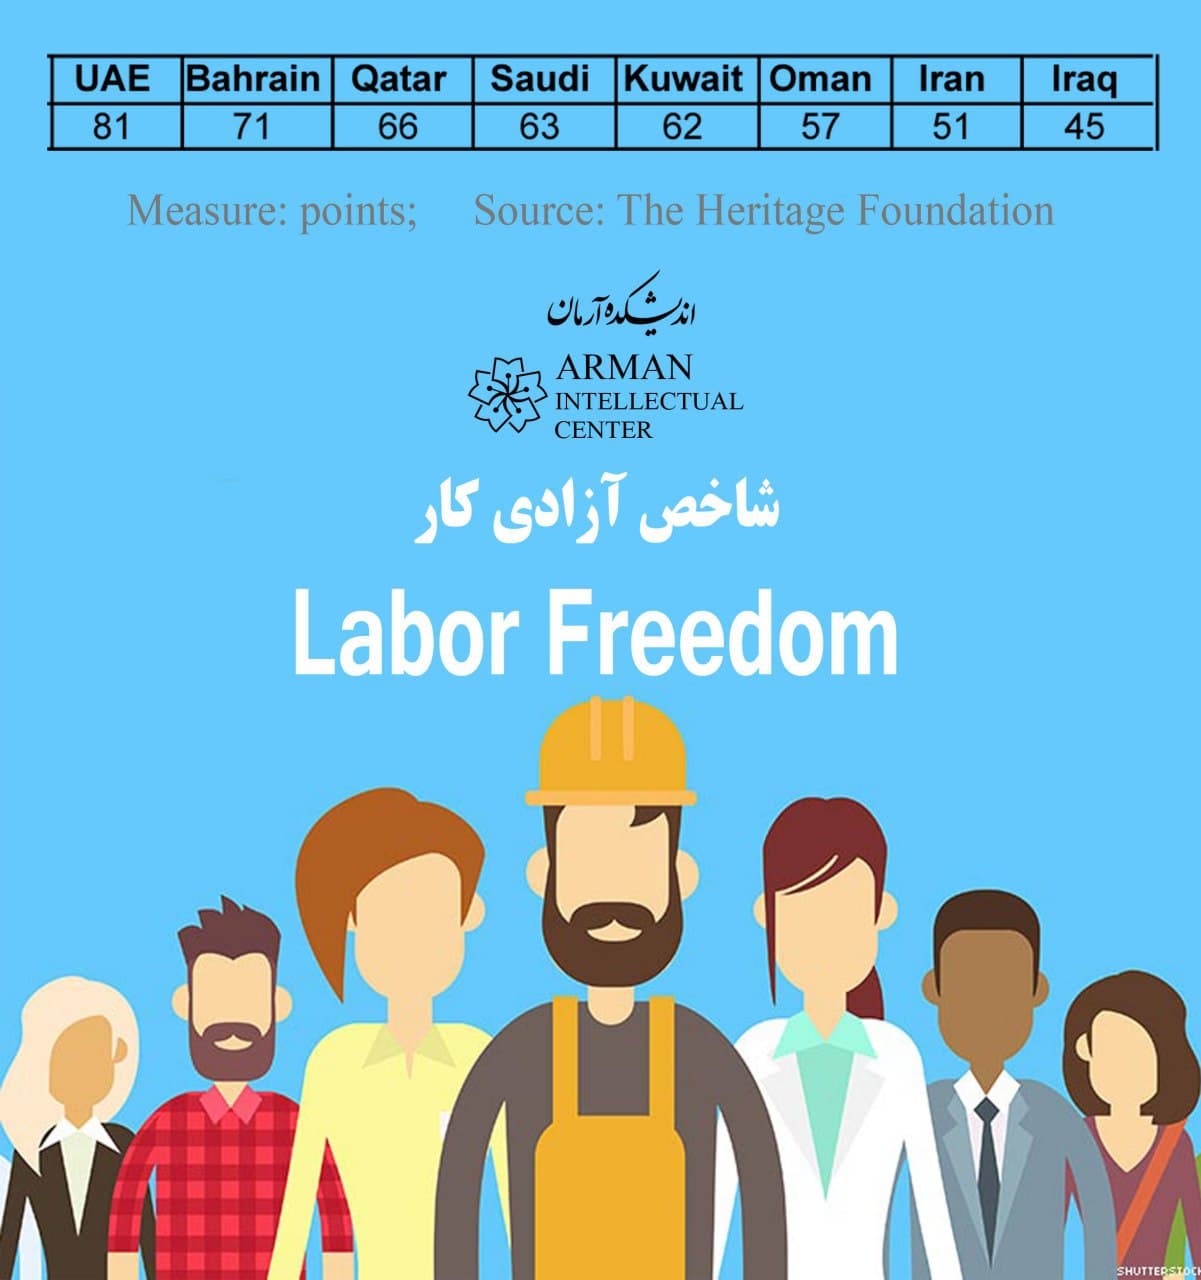 Labor-Freedom-Persiangulf-GCC Saudi Bahrain oman kuwait qatar oman iraq